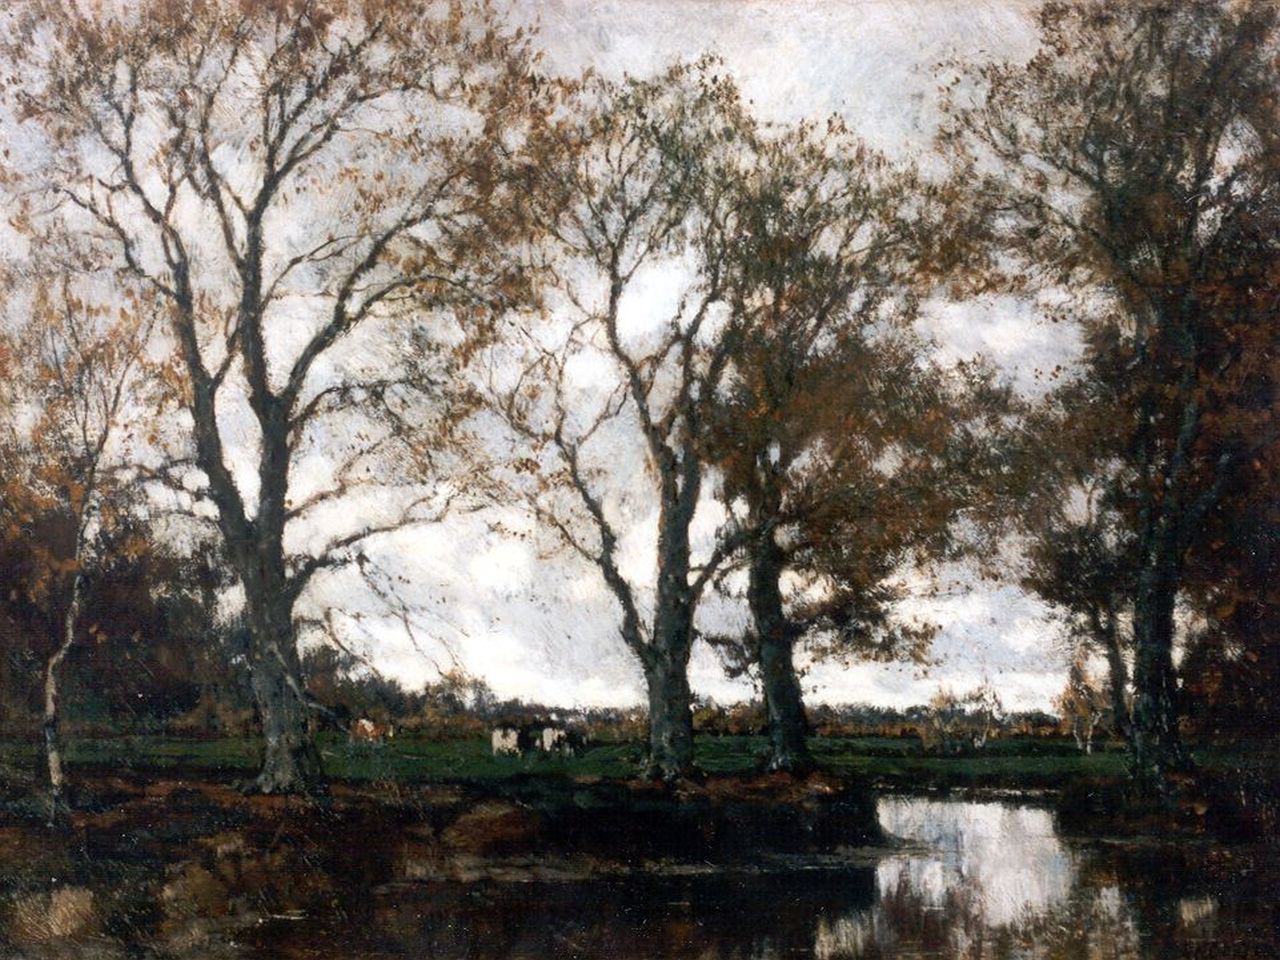 Gorter A.M.  | 'Arnold' Marc Gorter, Herfststemming in een bos met een beekje en koei, olieverf op doek 37,0 x 49,0 cm